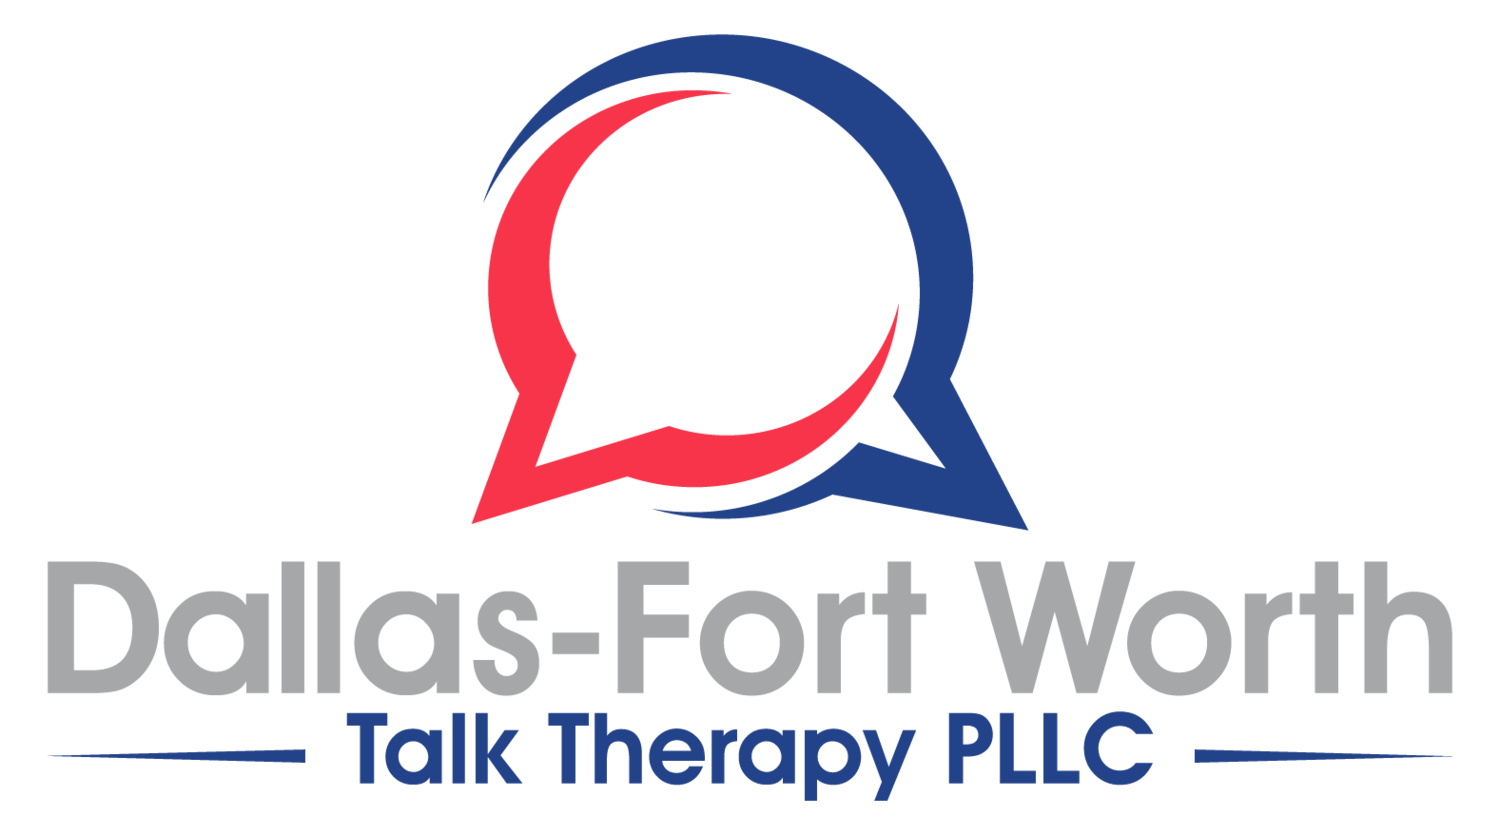 Dallas-Fort Worth Talk Therapy, PLLC